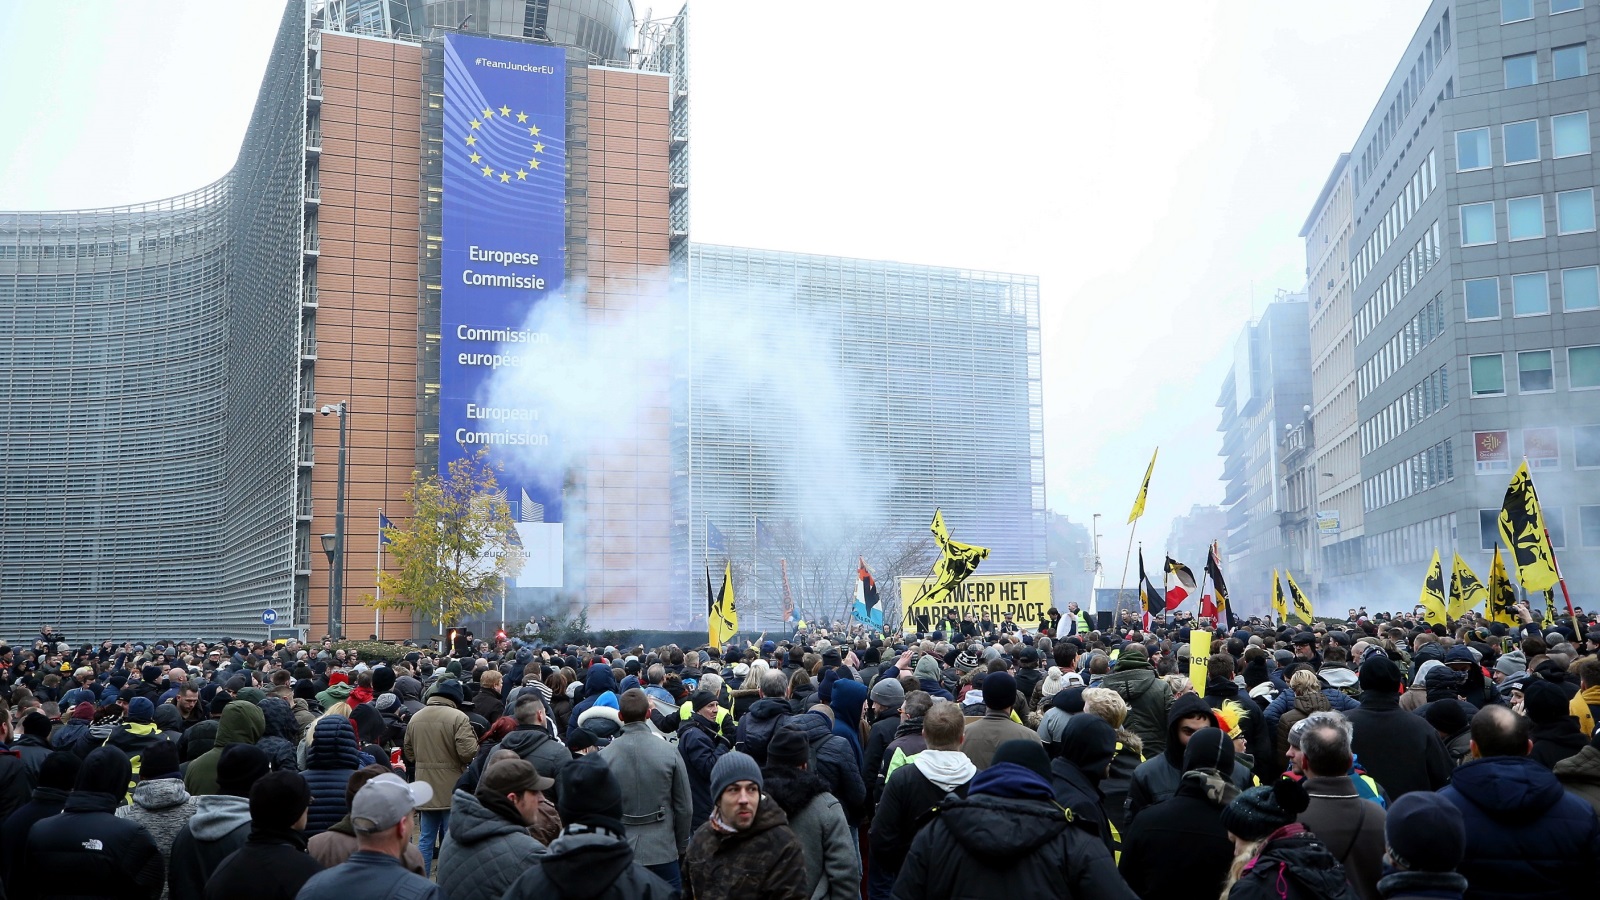 المتظاهرون نددوا بسياسات الهجرة واللجوء في بلجيكا وطالبوا باستقالة رئيس الوزراء (الأناضول)